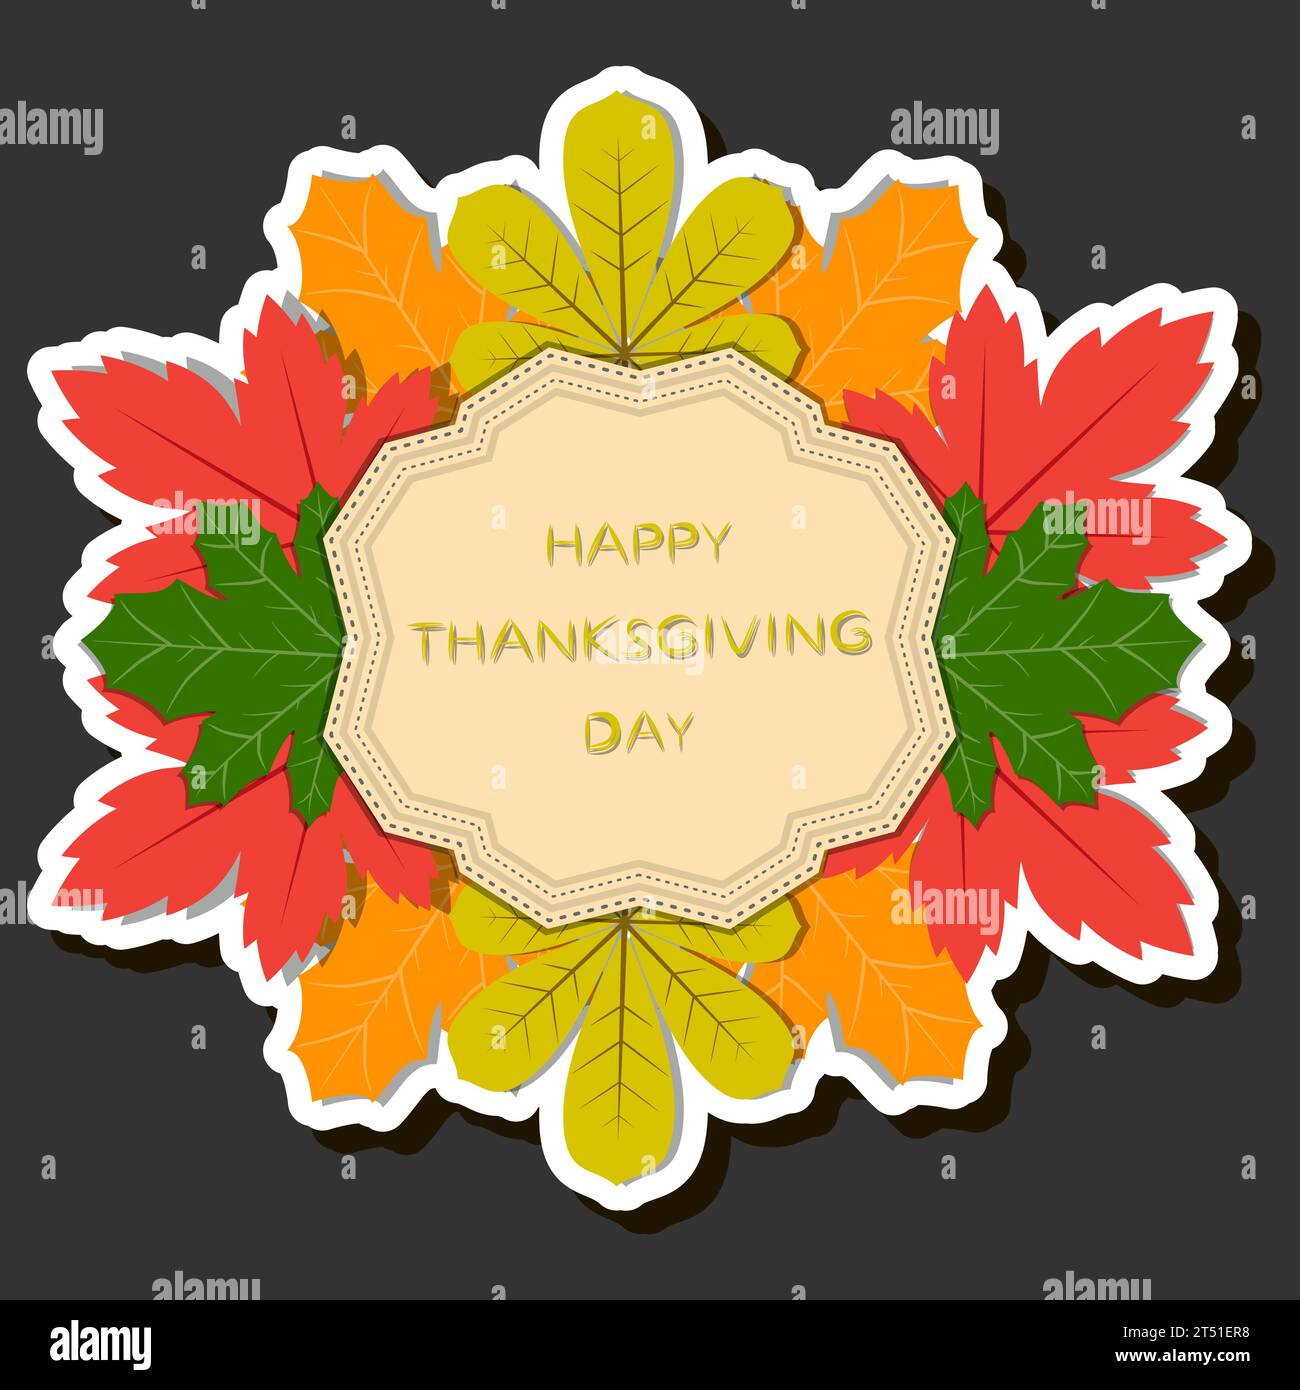 Schöne farbige Illustration zum Thema der Feier des jährlichen Feiertags Thanksgiving Day Stock Vektor